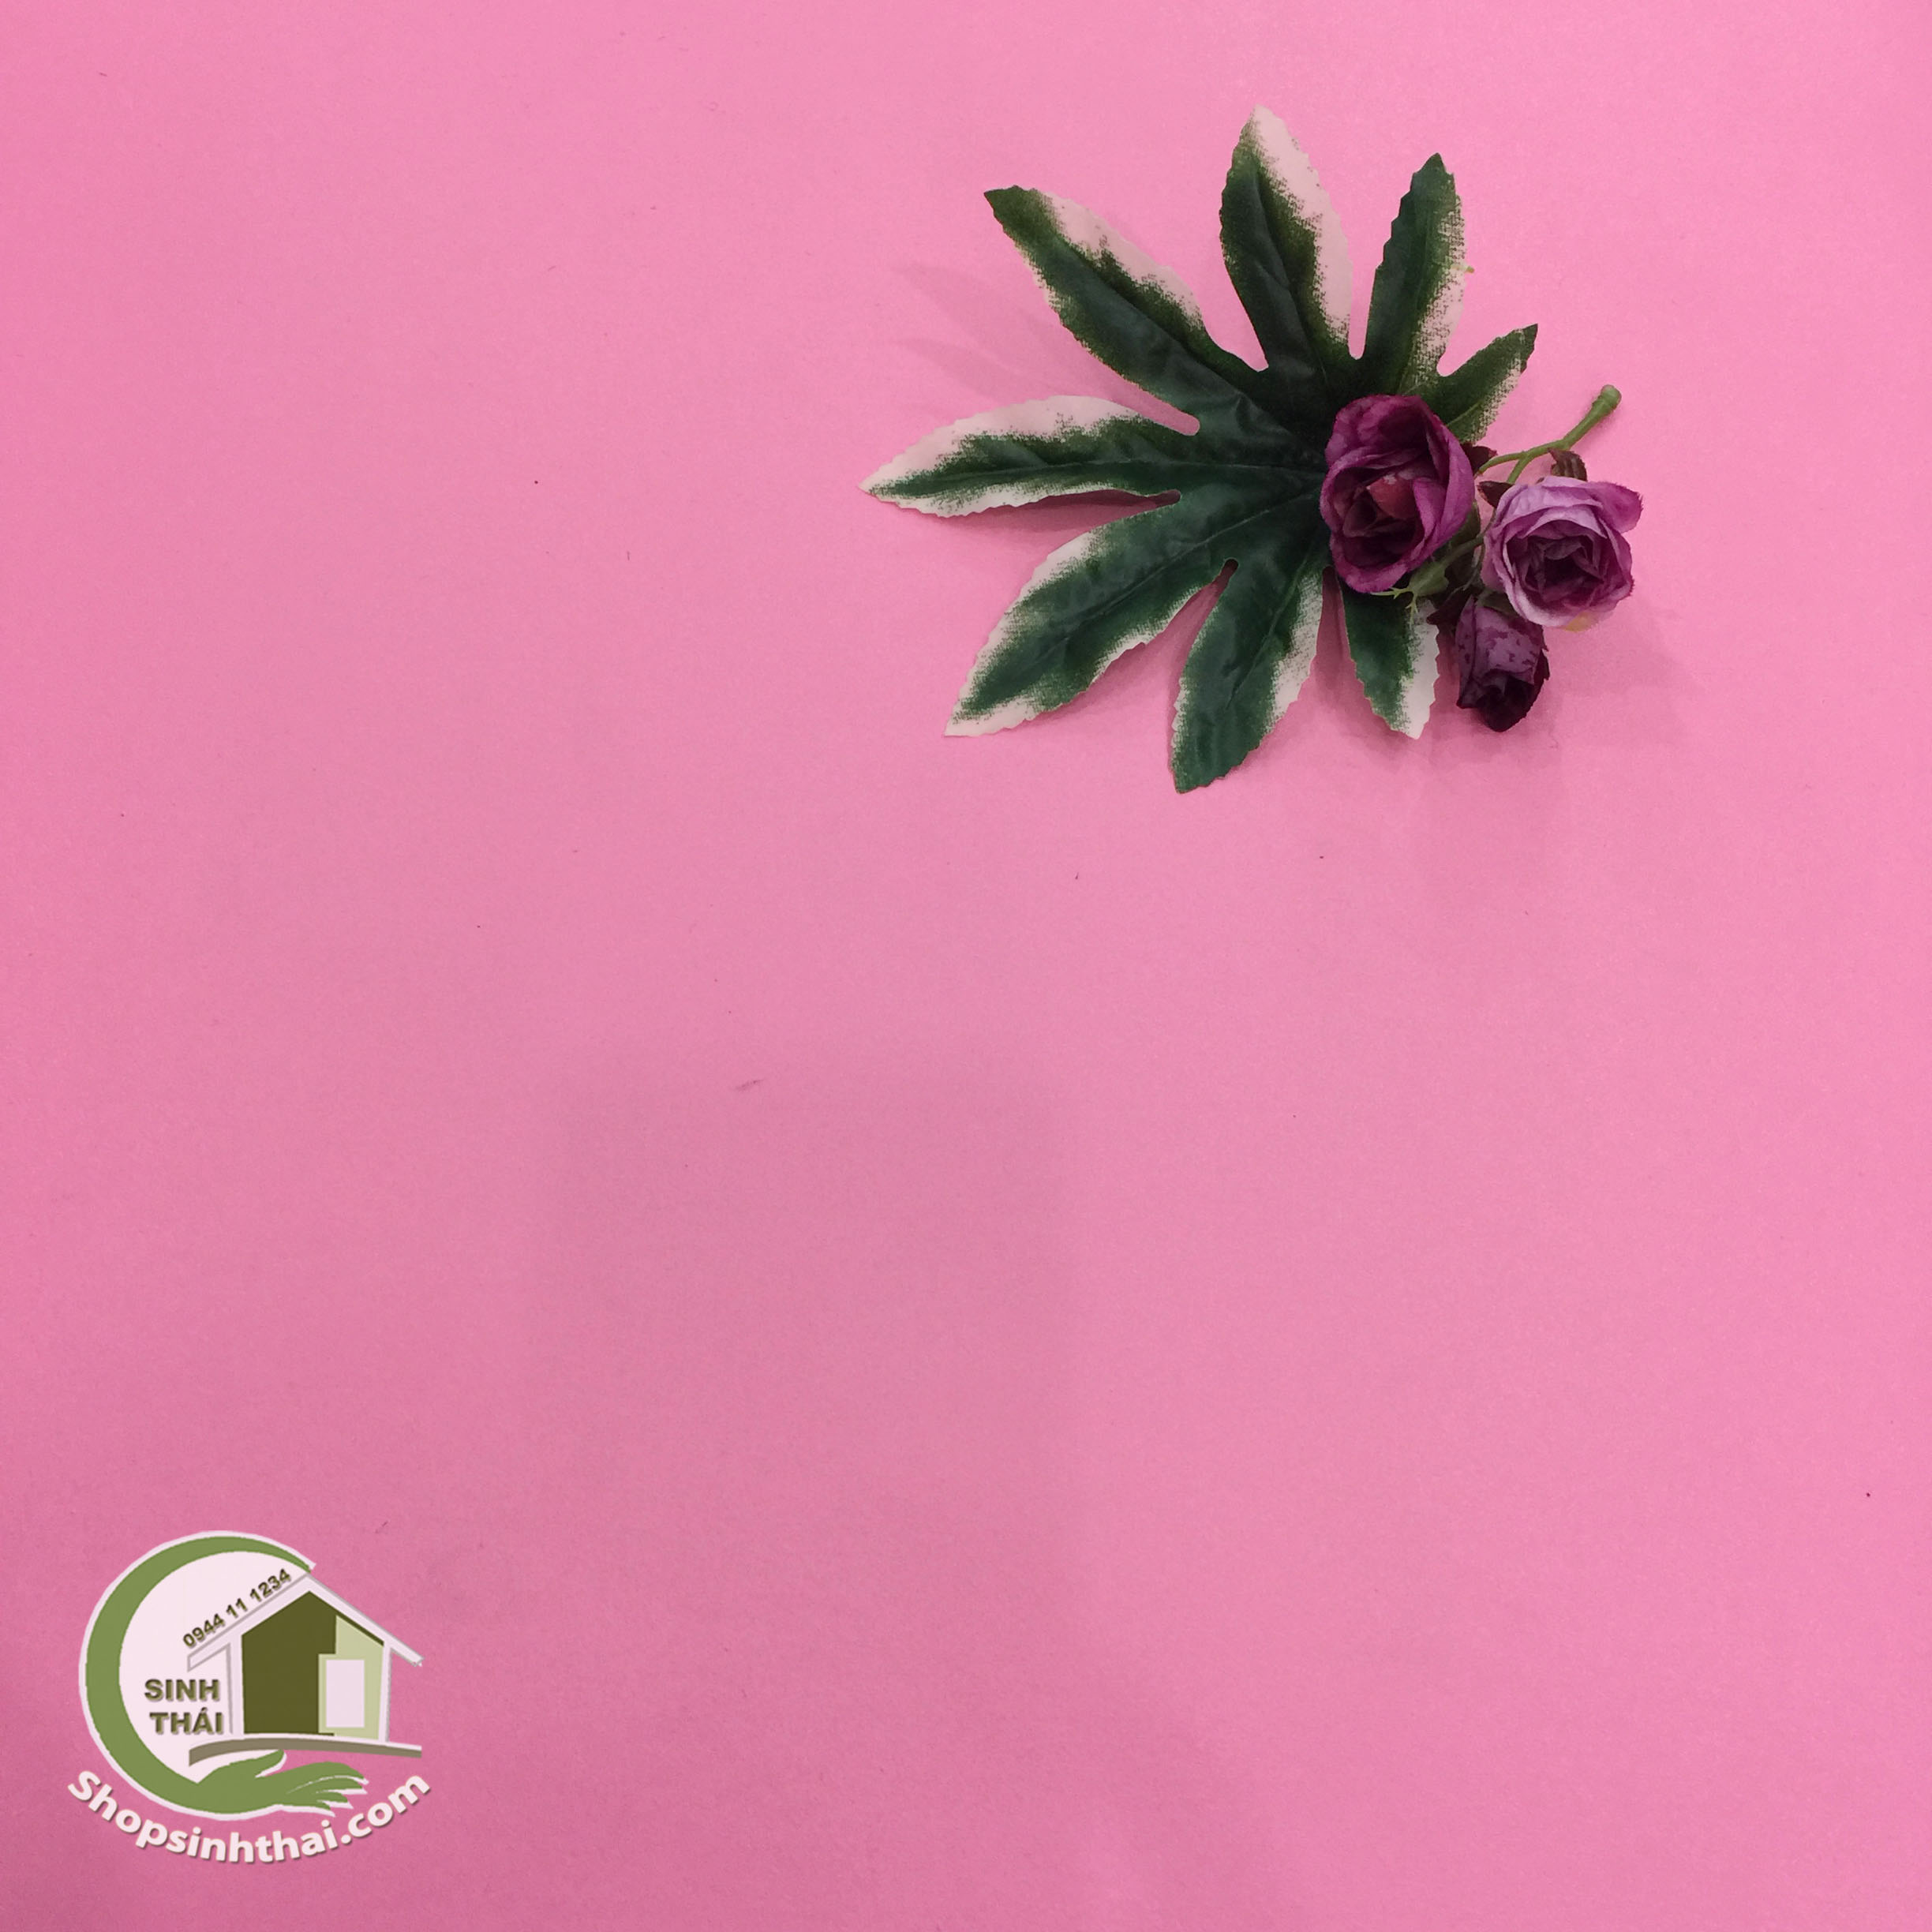 Phông nền giấy dán tường màu hồng nhám: Không gian sống của bạn sẽ trở nên đáng yêu và cuốn hút hơn với phông nền giấy dán tường màu hồng nhám. Với chất liệu chất lượng tốt và màu sắc đẹp mắt, bạn sẽ có một không gian sống đầy phong cách và sự trẻ trung.